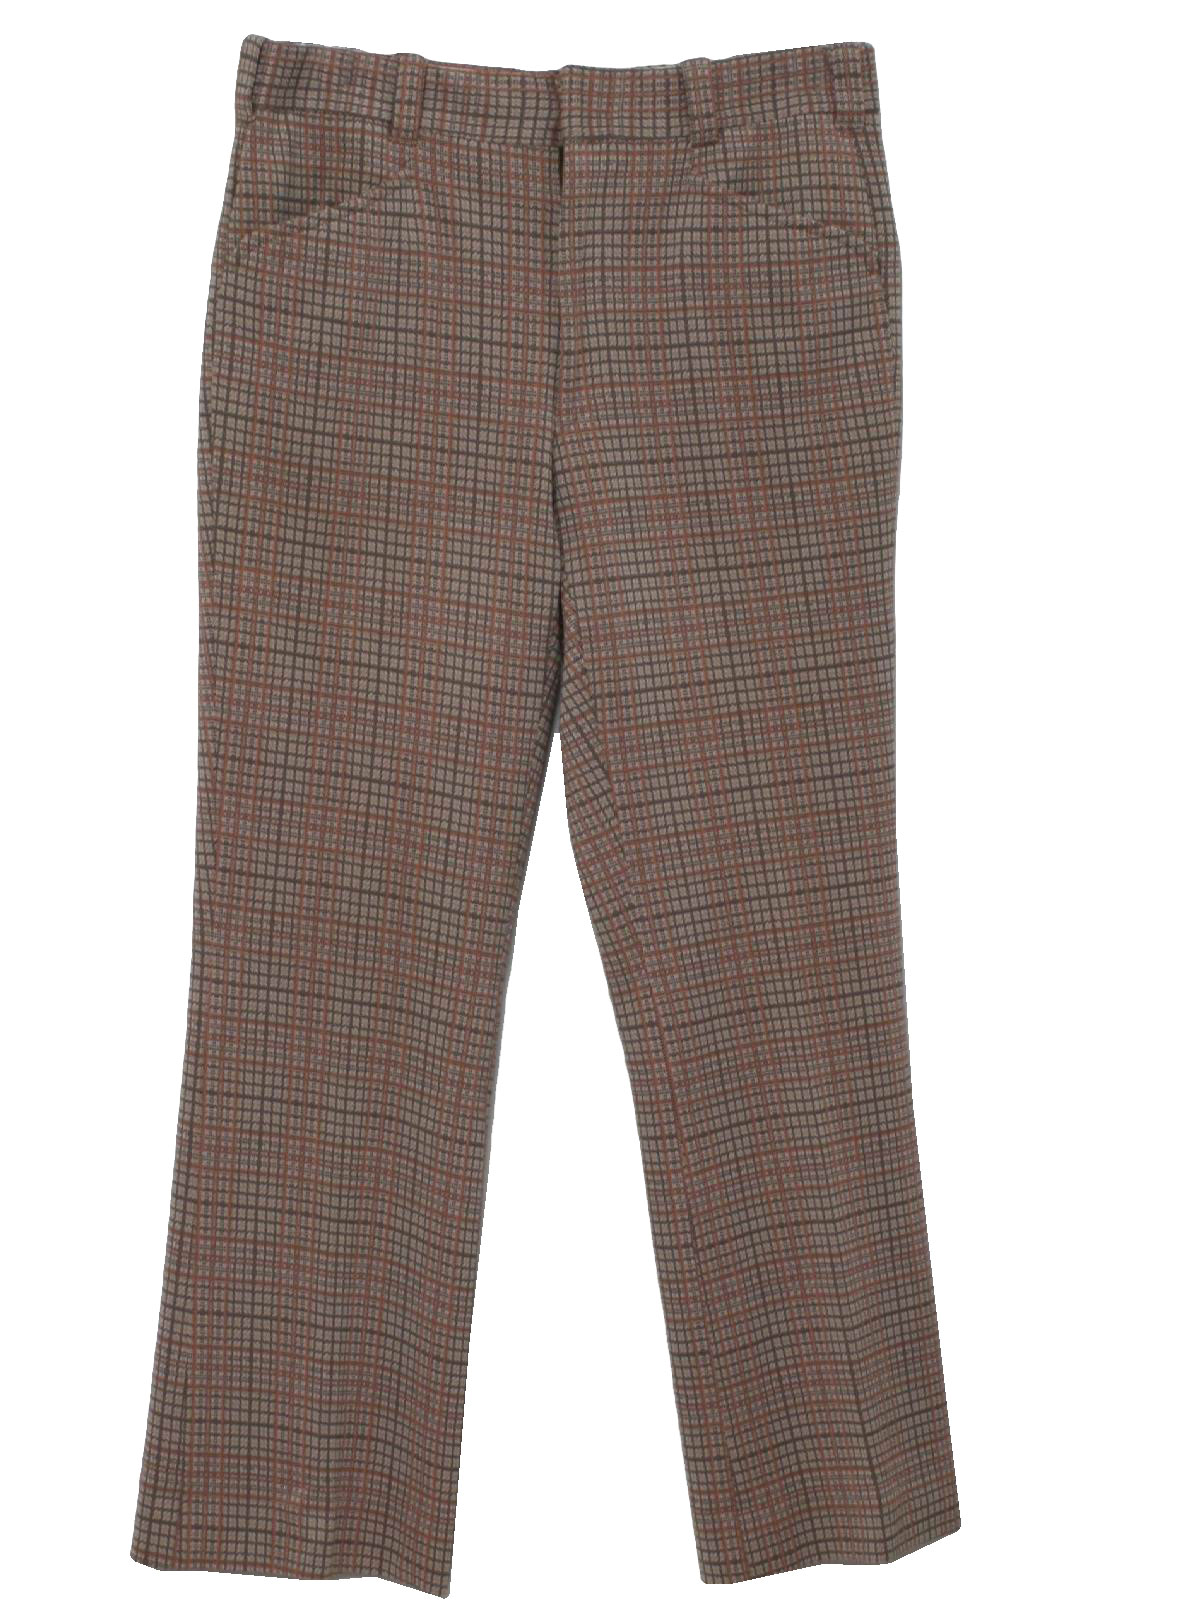 Vintage 1970's Pants: 70s -Missing Label- Mens brown, orange, tan and ...